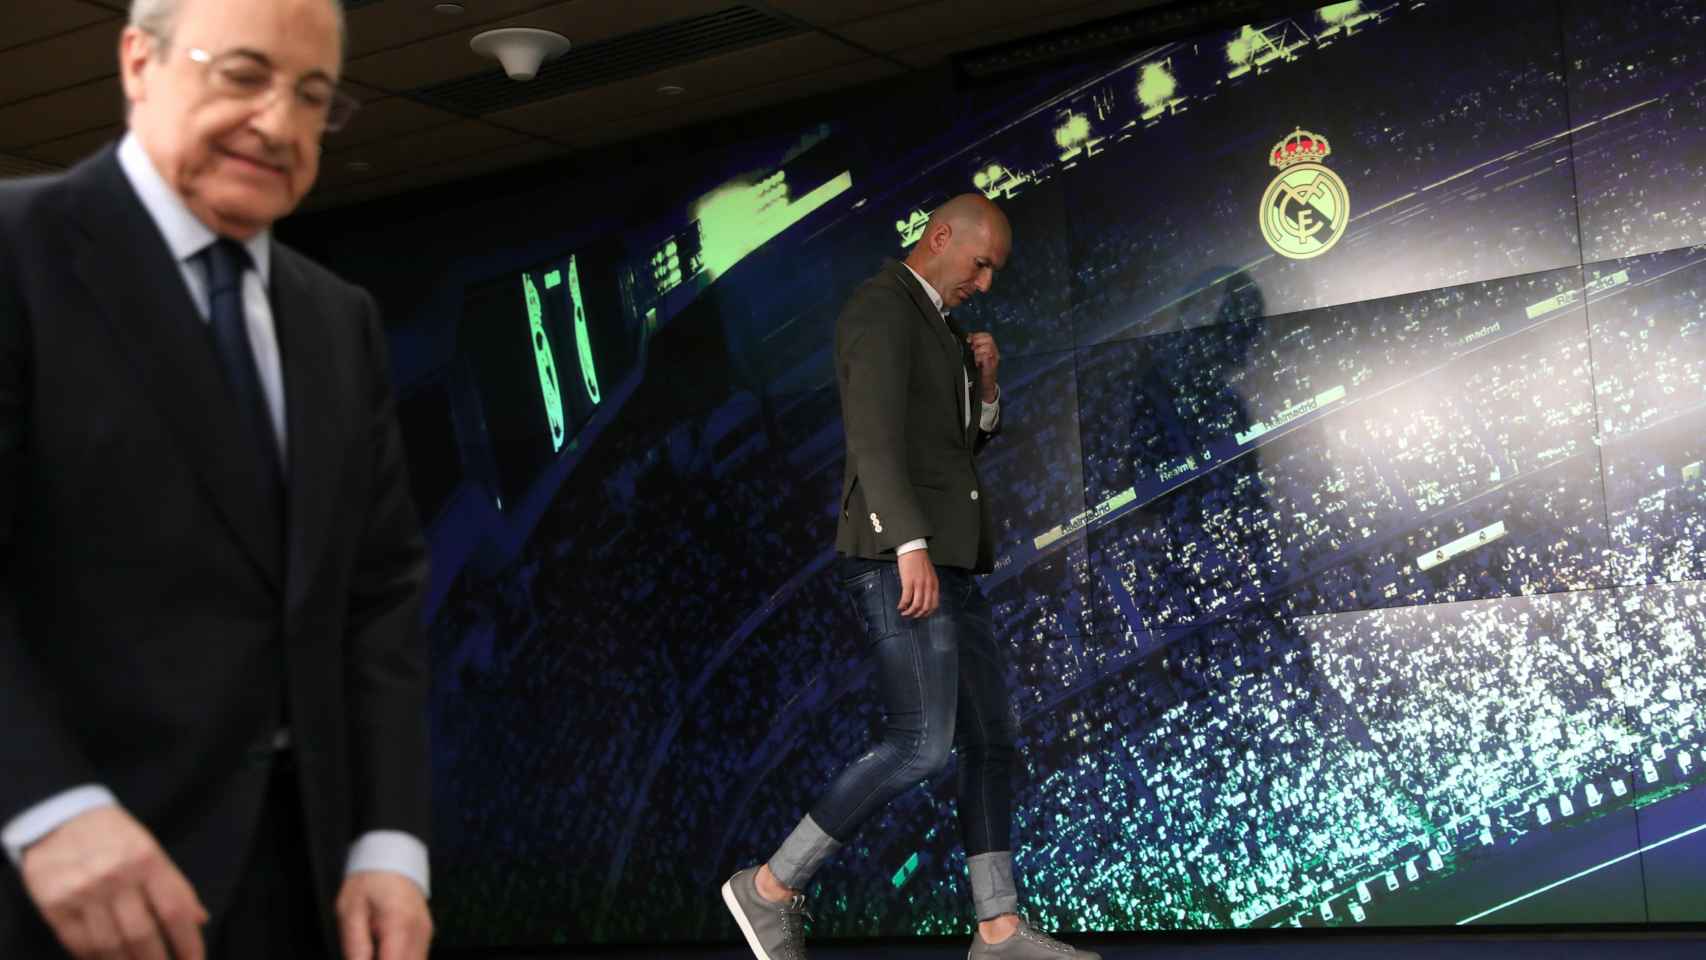 El look de Zidane en rueda de prensa